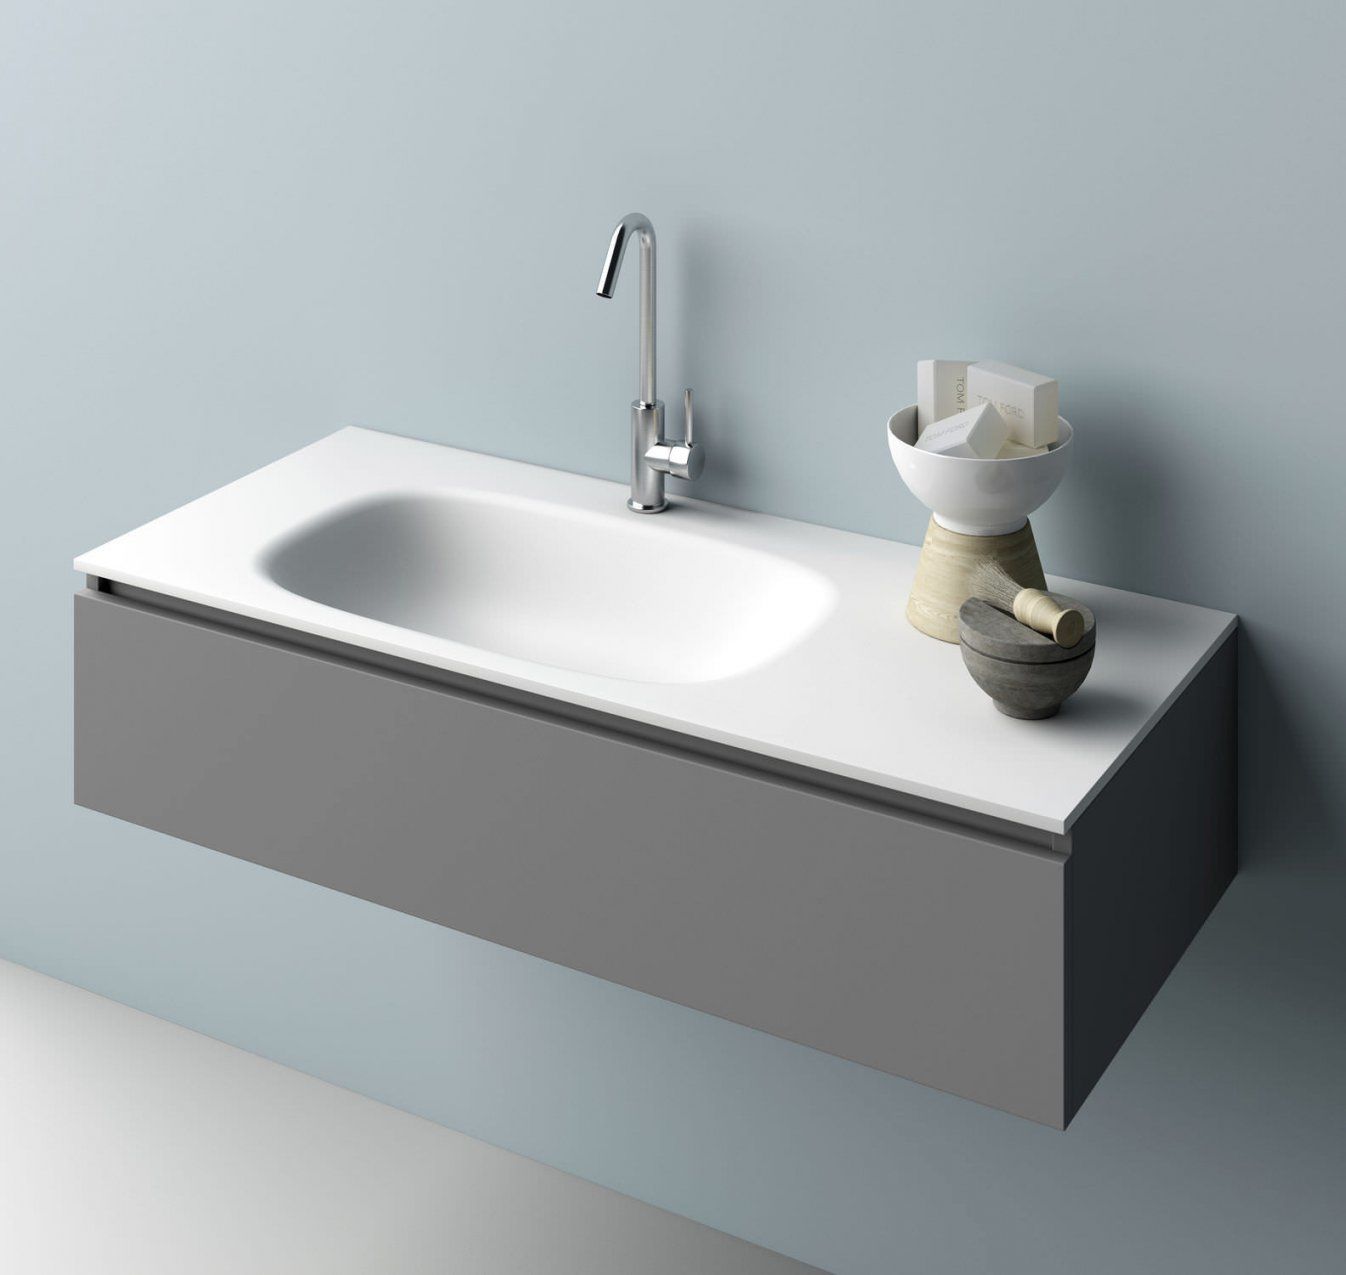 Luxus Moderne Waschtische Mit Unterschrank Waschbecken Anschluss von Moderne Waschtische Mit Unterschrank Bild